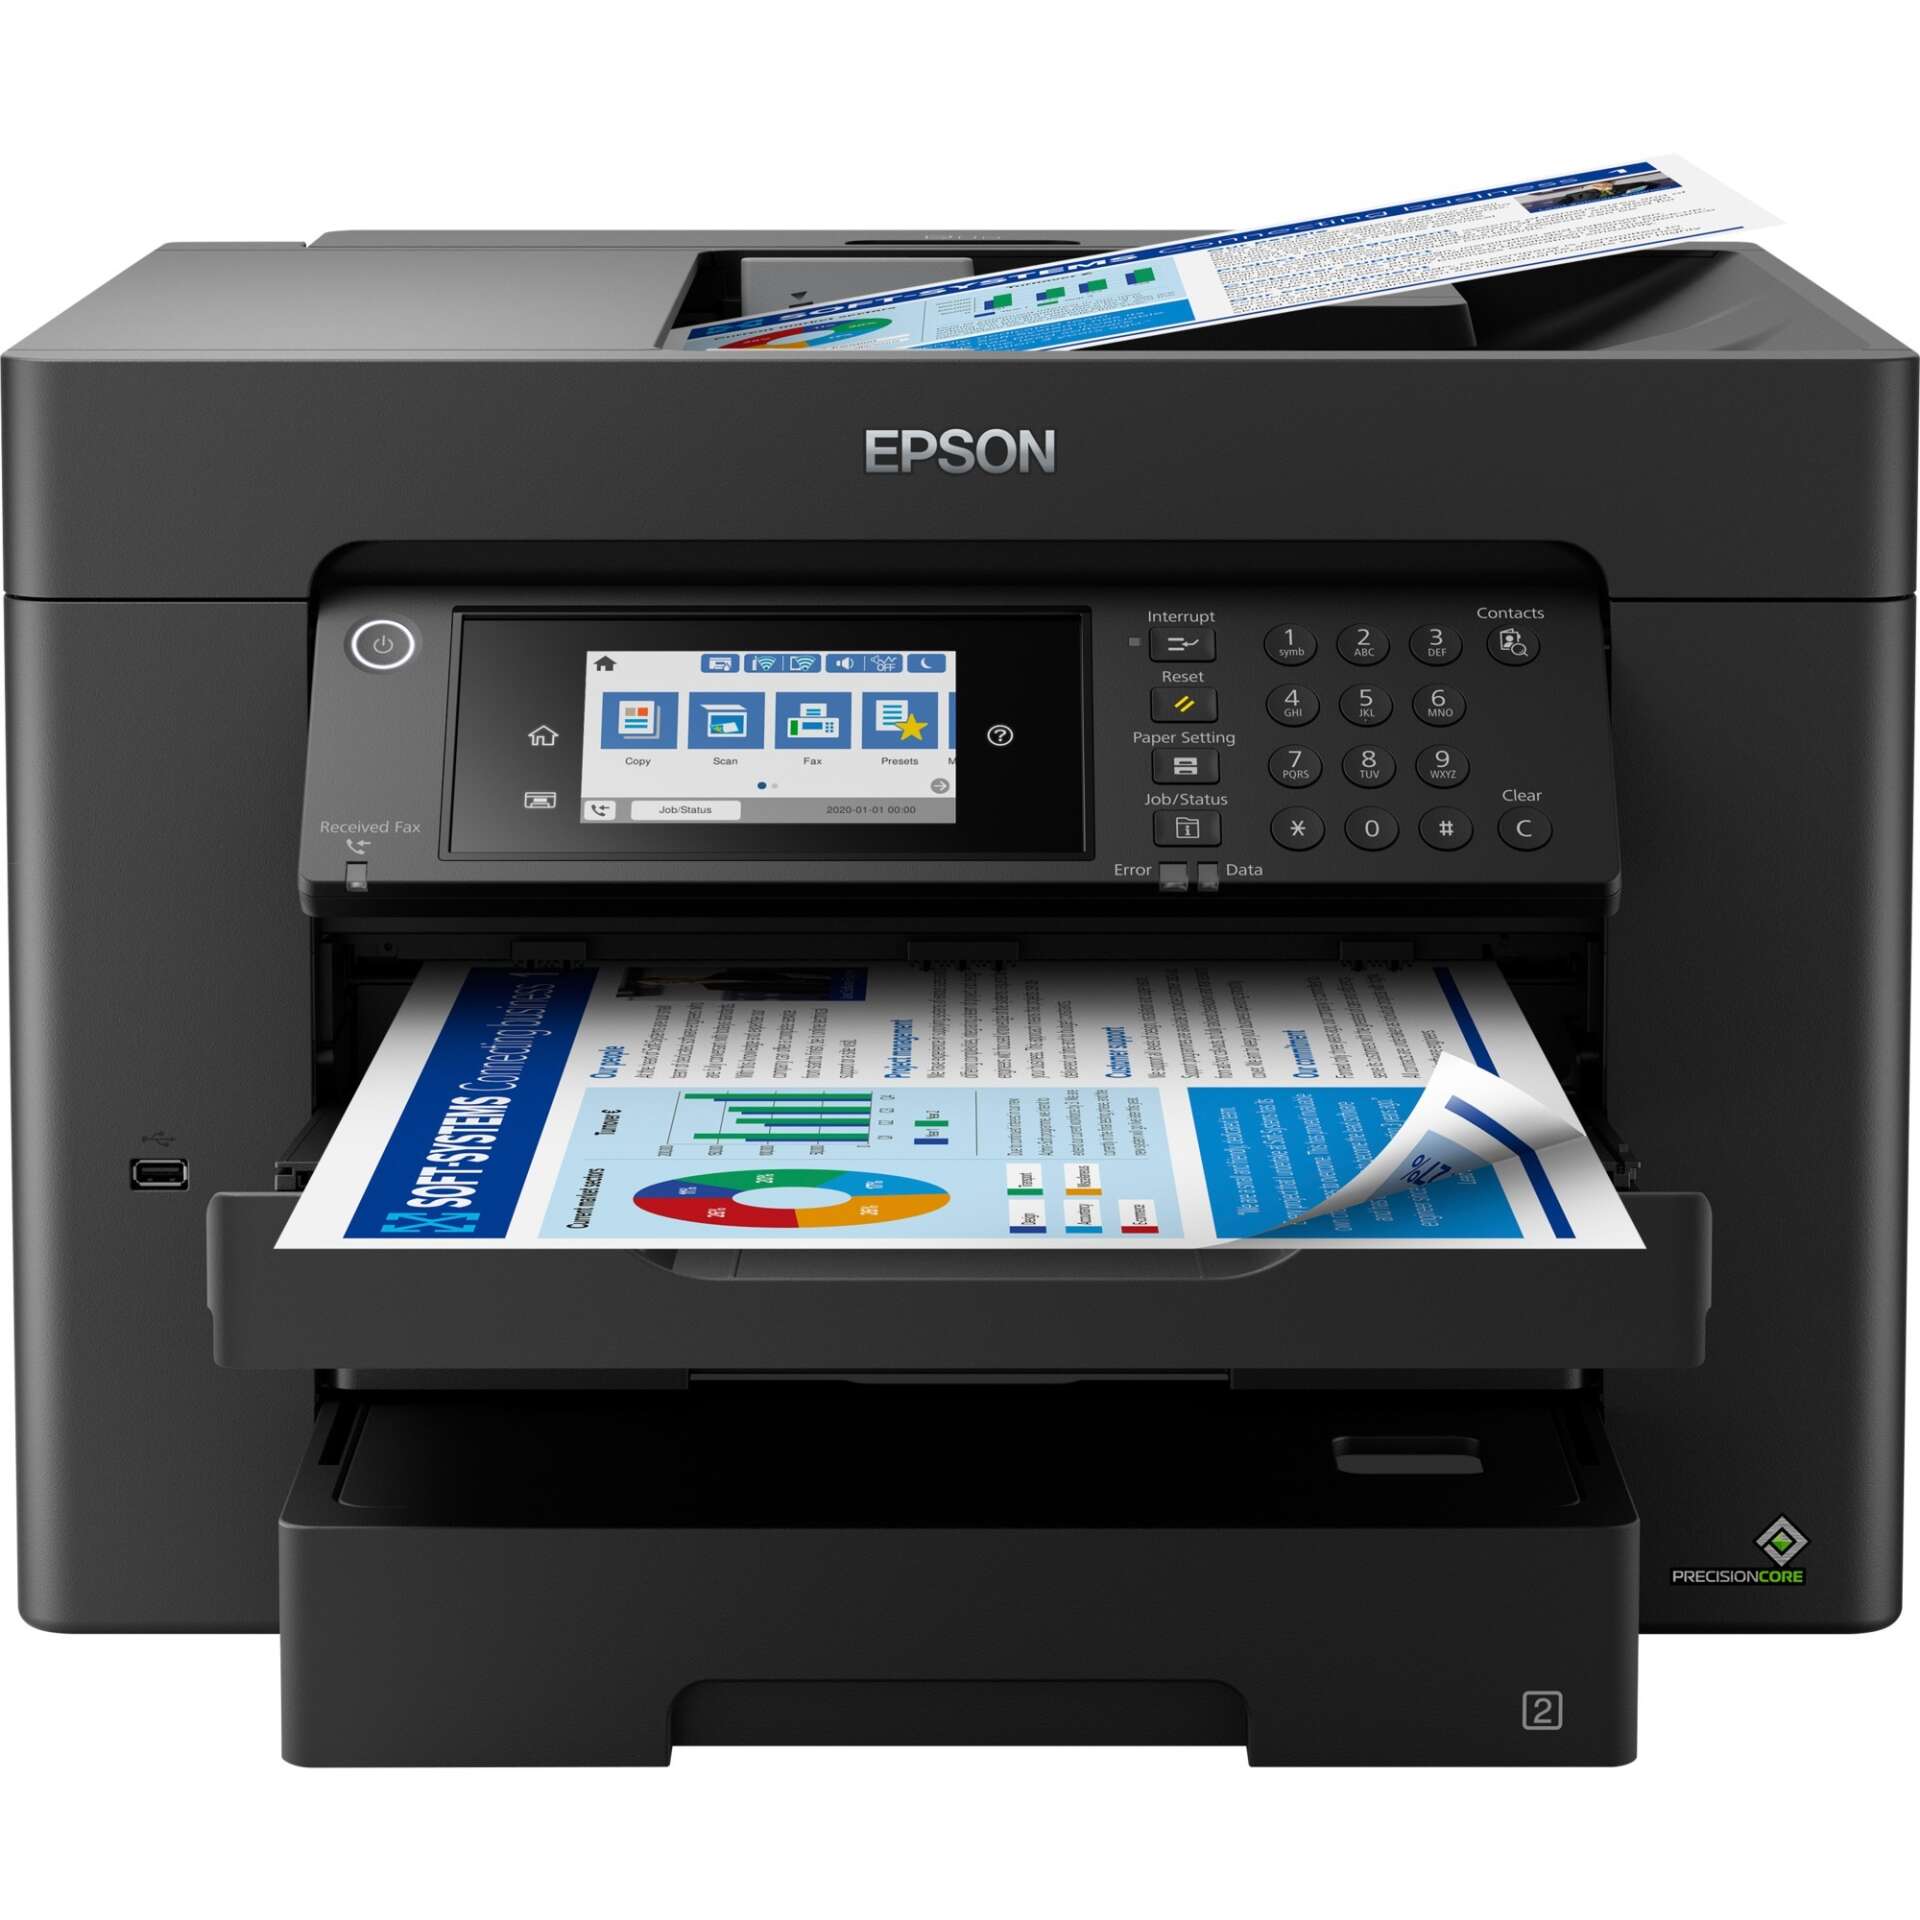 Epson workforce wf-7840dtwf multifunkciós színes tintasugaras nyomtató